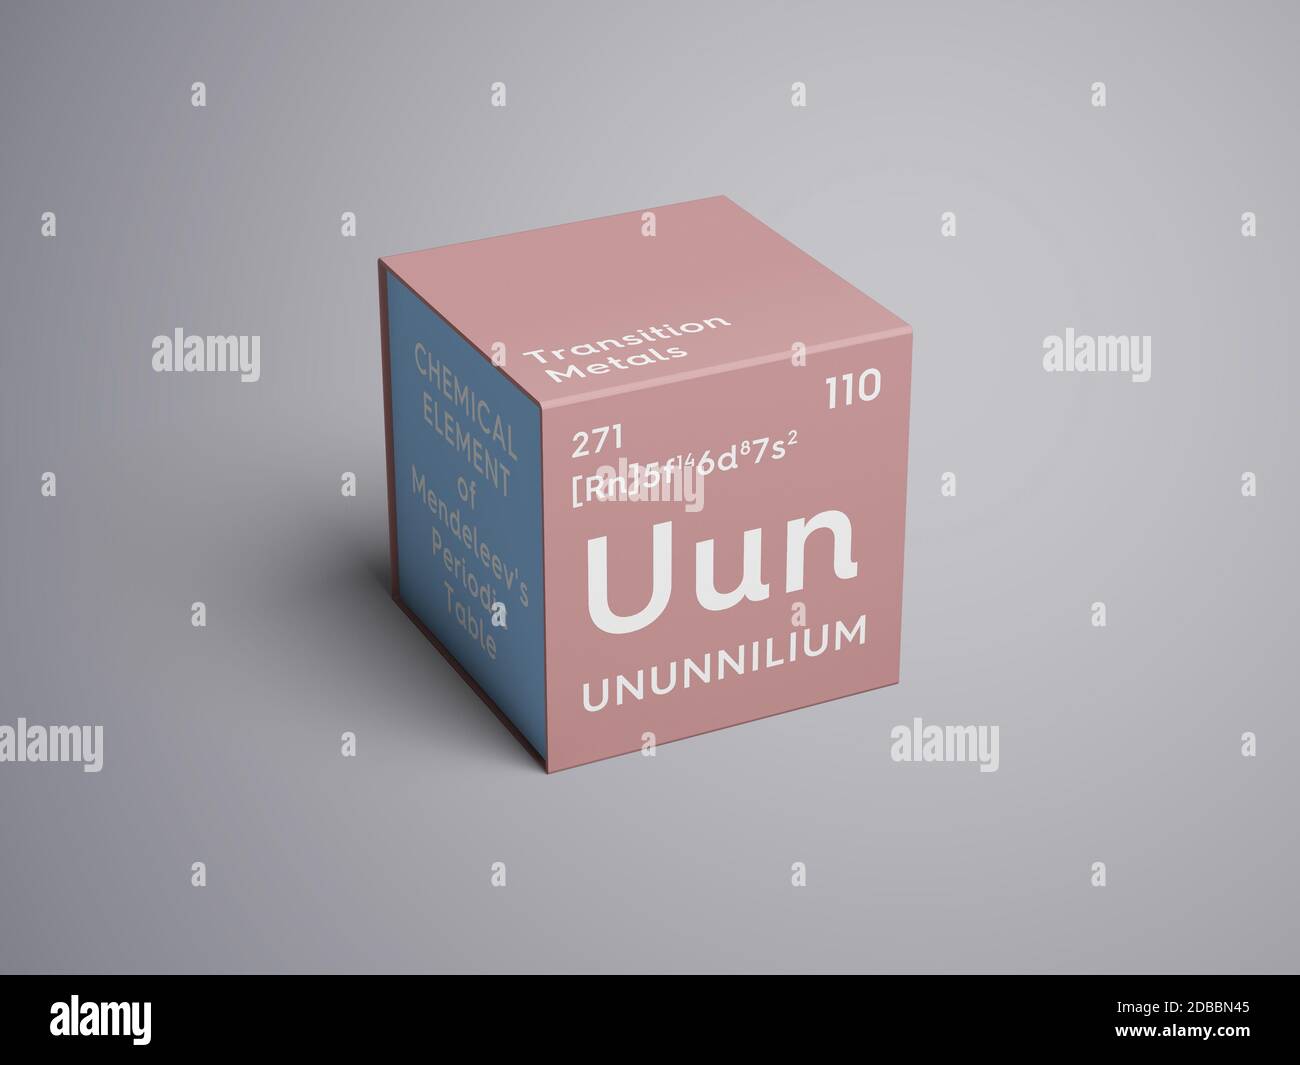 Ununnilium. Transition metals. Chemical Element of Mendeleev's Periodic Table. Ununnilium in square cube creative concept. 3D illustration. Stock Photo